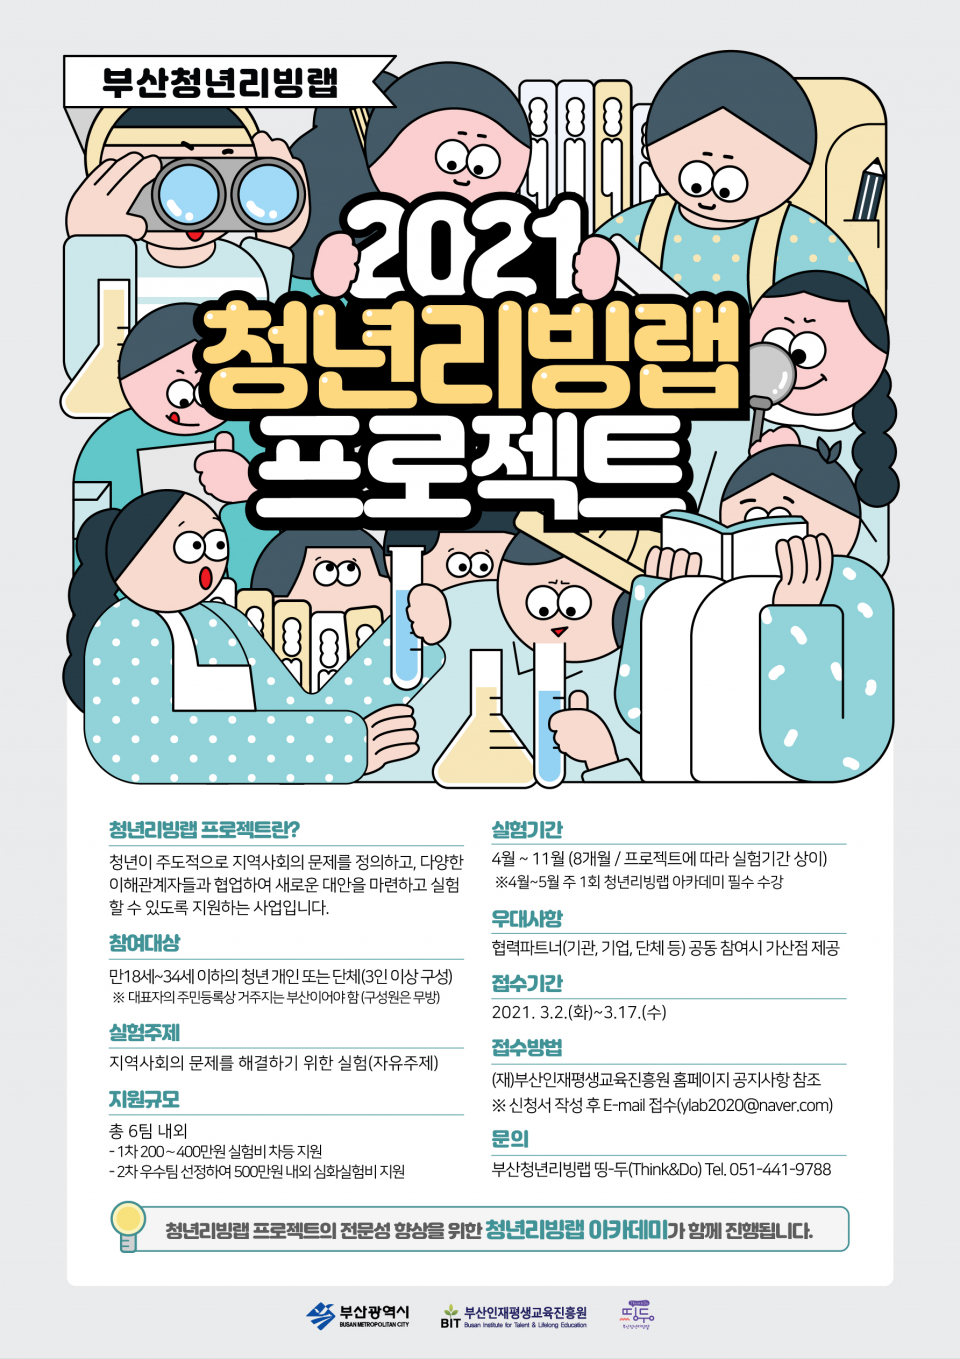 2021년 부산청년리빙랩 프로젝트 참가팀 모집